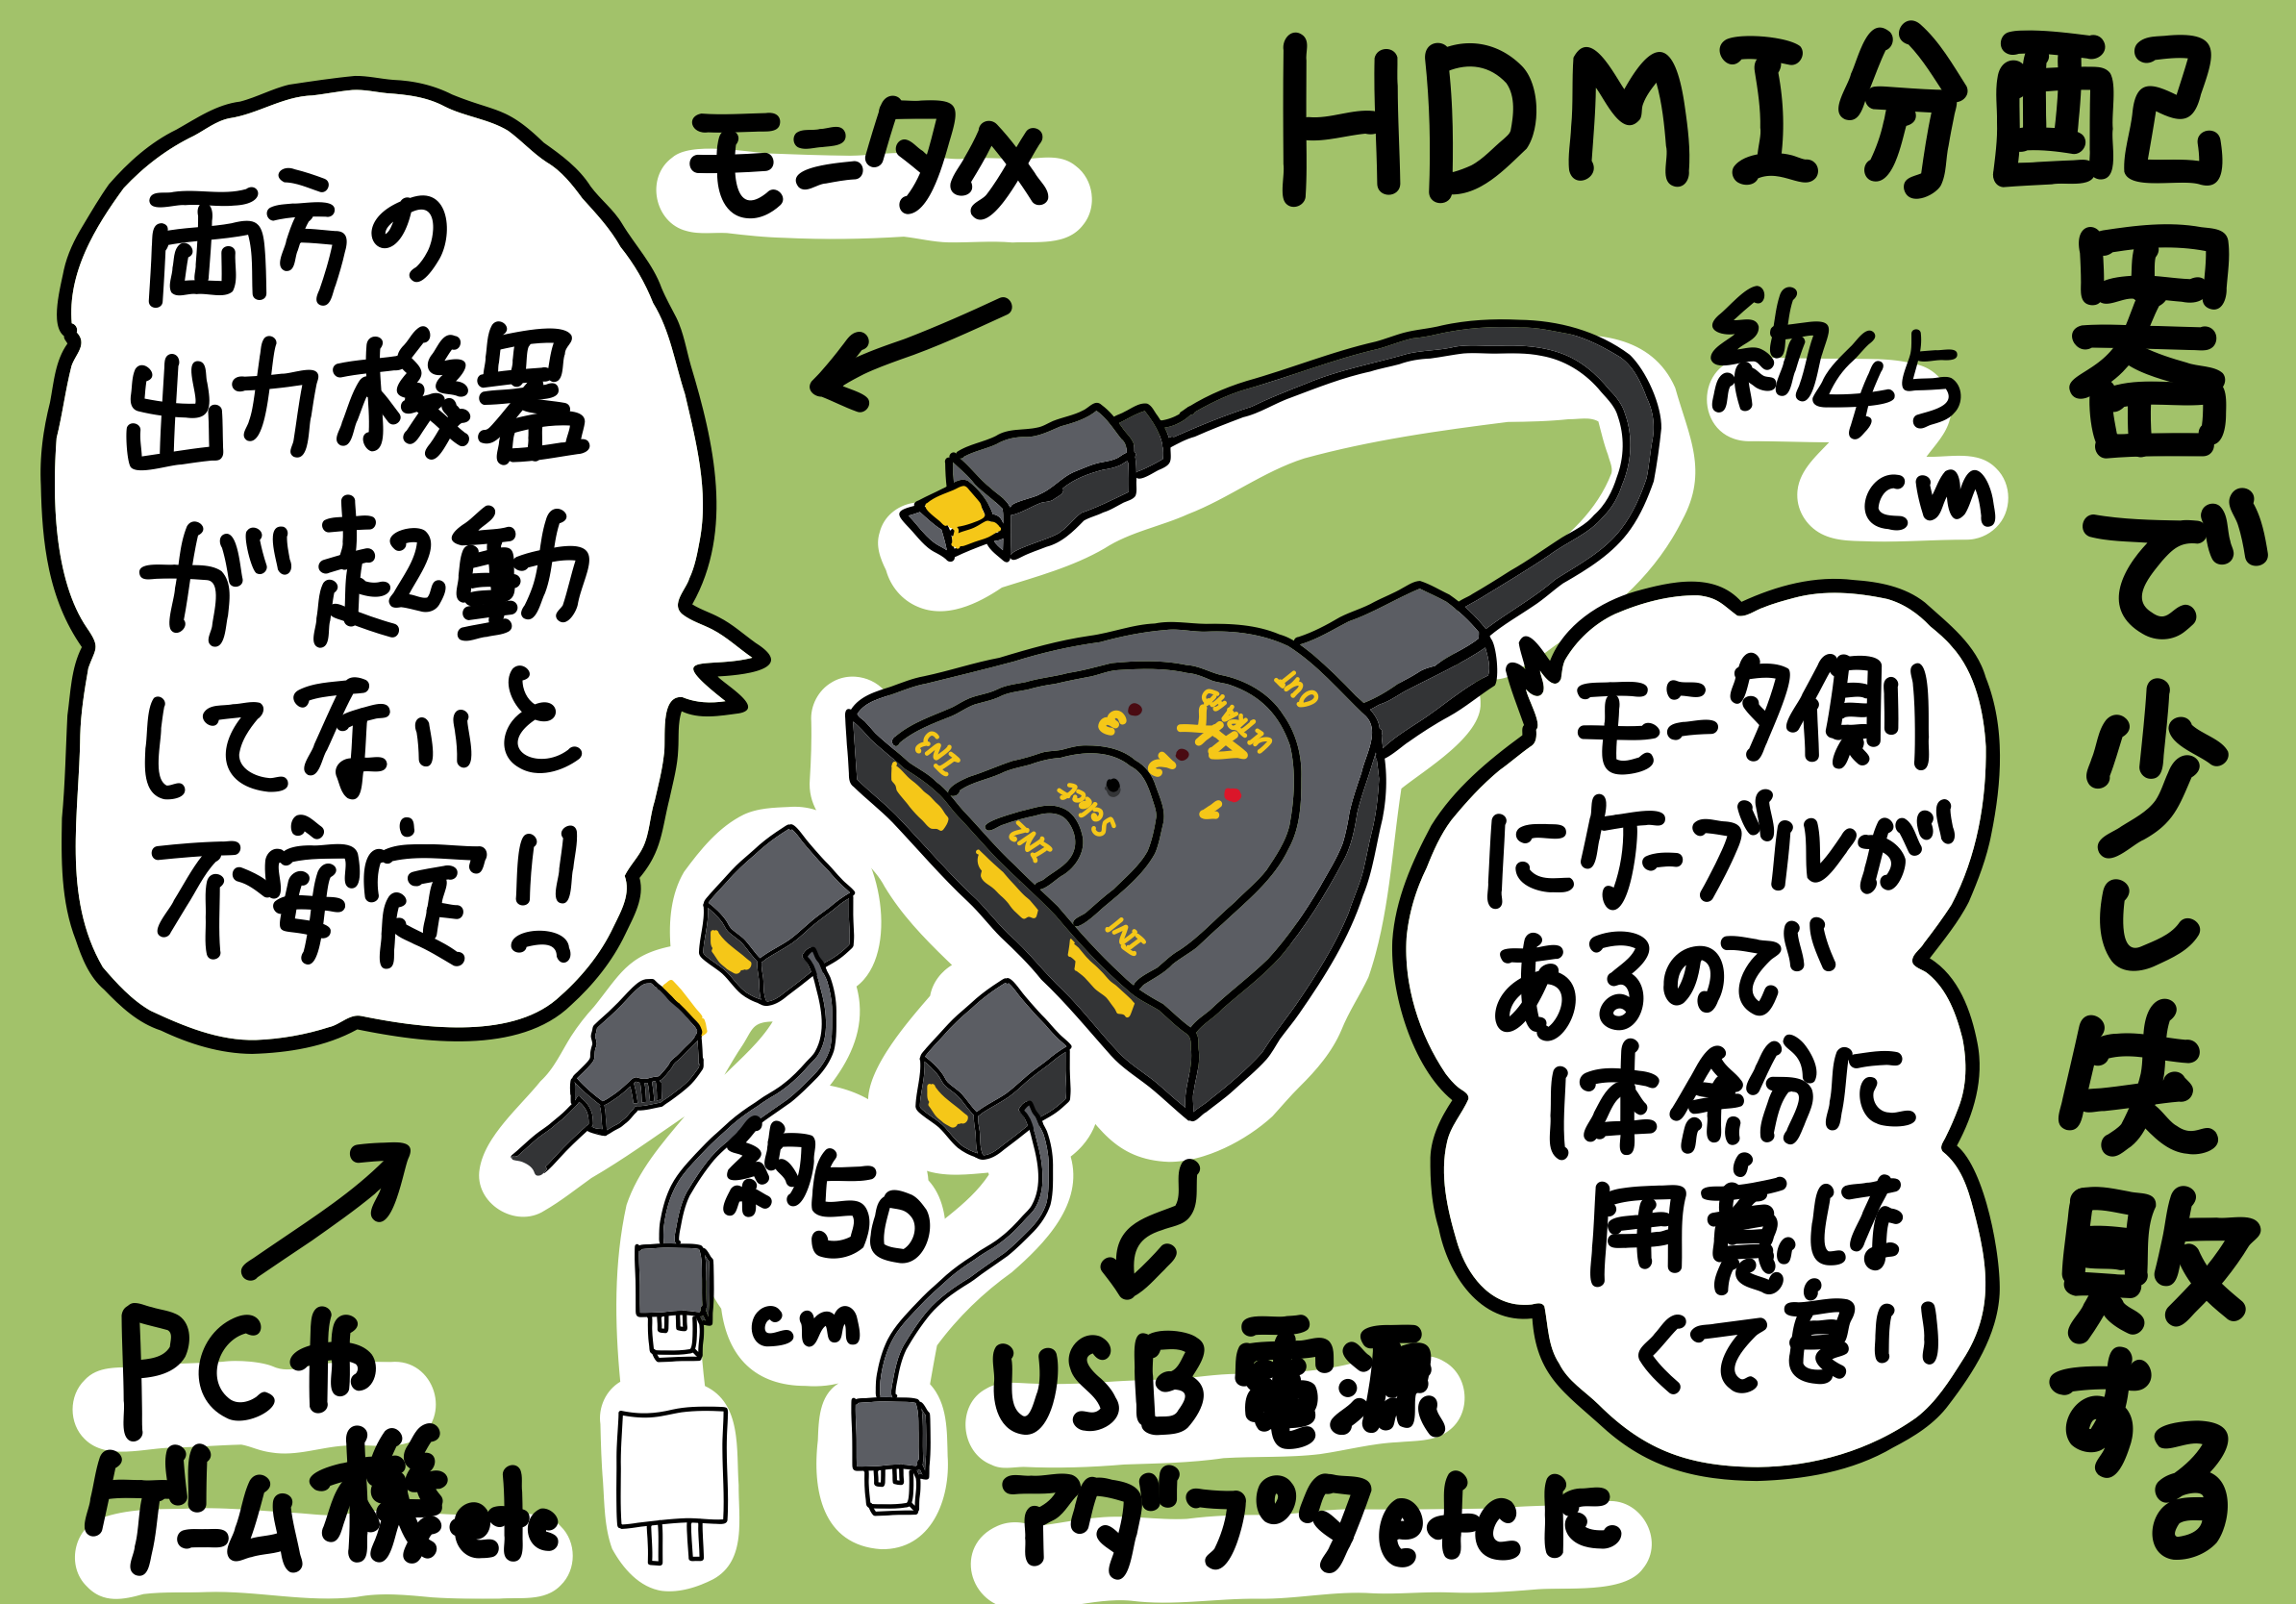 HDMI 分配器を利用する時は給電に注意 給電付きのものを購入するより高くついた失敗談